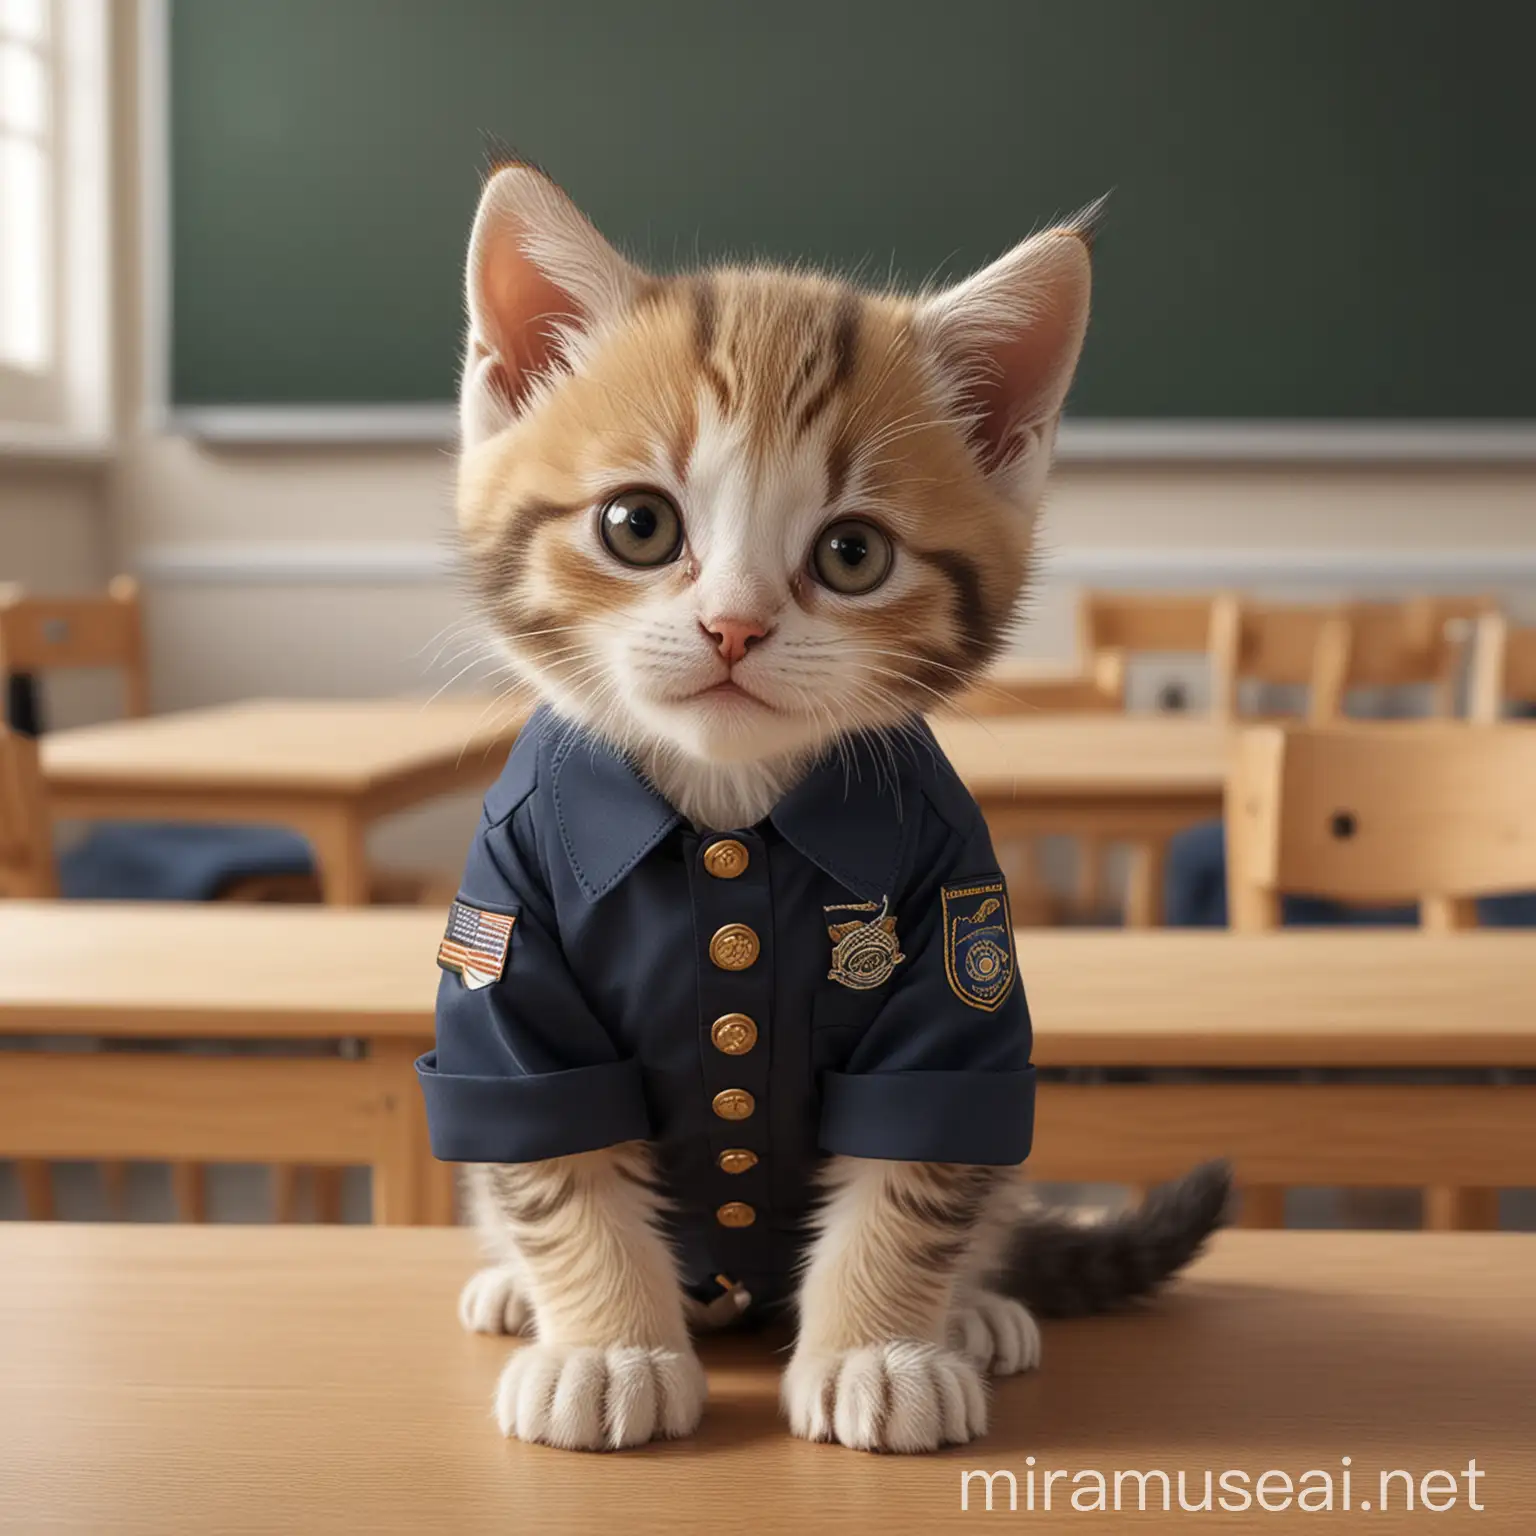 Attentive Kitten Learning in Classroom with School Uniform